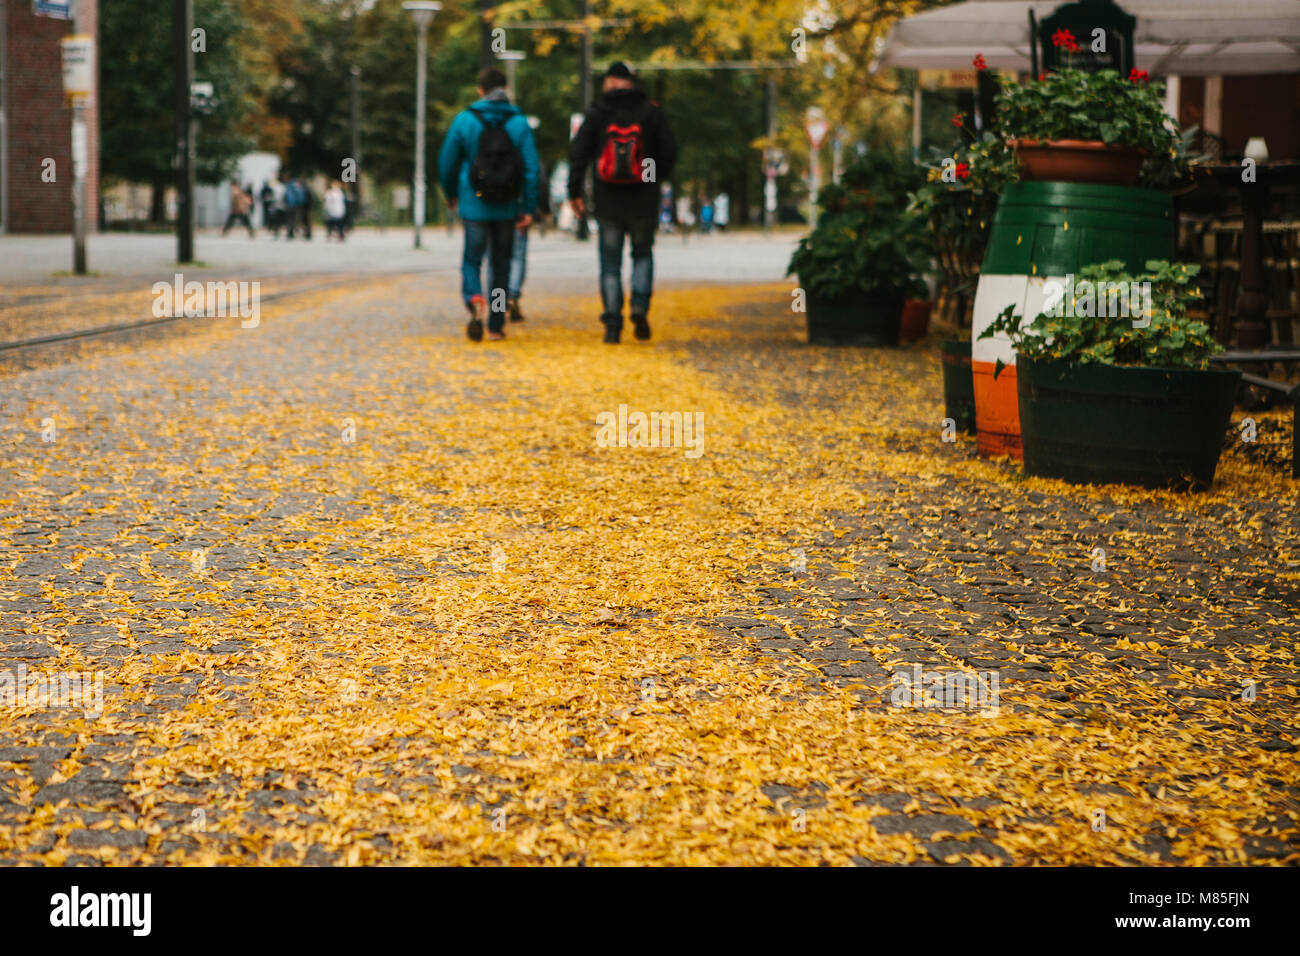 Herbst Stadt Szene. Selektiver Fokus auf gelbe Laub auf der Straße. Menschen gehen neben einem Cafe im Hintergrund Stockfoto